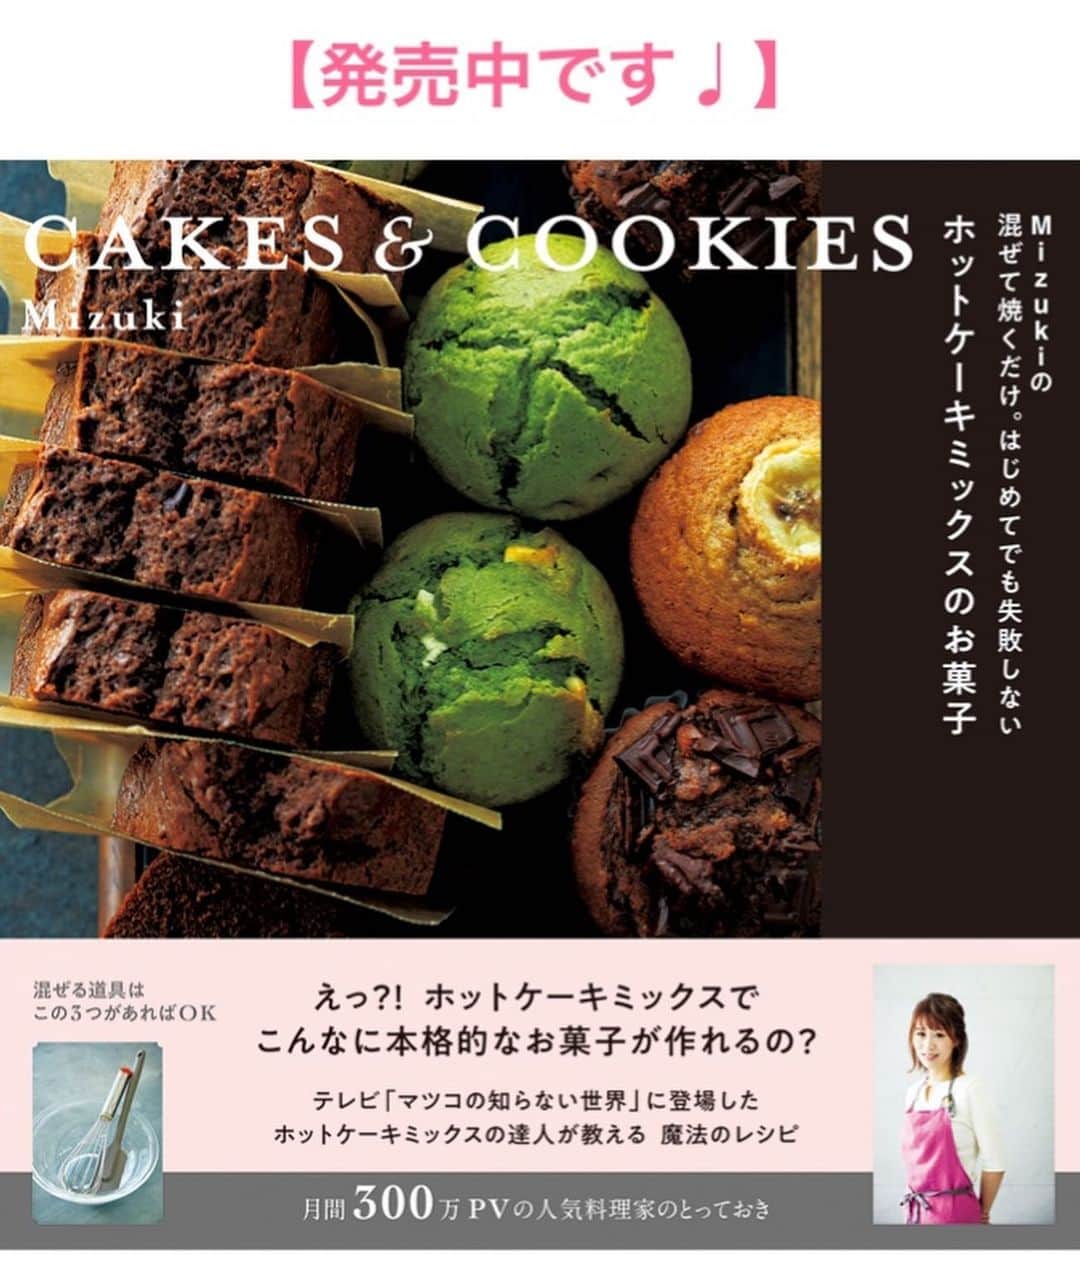 Mizuki【料理ブロガー・簡単レシピ】さんのインスタグラム写真 - (Mizuki【料理ブロガー・簡単レシピ】Instagram)「・﻿ 【レシピ】ーーーーーーーーーーー﻿ ♡材料3つ♡片栗粉deわらび餅♡﻿ ーーーーーーーーーーーーーーーー﻿ ﻿ ﻿ おはようございます(*^^*)﻿ ﻿ 今日ご紹介させていただくのは﻿ おやつにぴったりのわらび餅♡﻿ なんとこれ、、﻿ たった3つの材料で作れるんですよ♩﻿ 使用するのは片栗粉・砂糖・水のみ！﻿ ﻿ とっても簡単にできて﻿ もちろんコスパも抜群なので﻿ 是非お試し下さいね(*´艸`)﻿ ぷるぷるもちもちで美味しいですよ〜♡﻿ ﻿ ﻿ ﻿ ーーーーーーーーーーーーーーーーーーーー﻿ 【3人分くらい】﻿ 水...300ml 片栗粉...50g﻿ 砂糖...30g﻿ ※トッピング例はポイントにて▼﻿ ﻿ 1.全ての材料を鍋に入れ、よく混ぜてから中火にかける。木べらで絶えず混ぜながら加熱し、とろみがついたら弱火にする。﻿ 2.透明感が出るまで更に加熱し、火を止め、更に1分間よく混ぜる(練る)。﻿ 3.氷水を張ったボウルにスプーンを使って落とし入れて冷ます。器に盛り、好みのトッピングで召し上がれ♩﻿ ーーーーーーーーーーーーーーーーーーーー﻿ ﻿ ﻿ ﻿ 《ポイント》﻿ ♦︎冷蔵庫で冷やすとかたくなるので注意して下さい☆﻿ ♦︎わらび餅自体に甘みはついていますが、お好みできな粉、黒蜜、あんこなどをトッピングするのもおすすめです♩﻿ ﻿ ﻿ ﻿ ﻿ ﻿ ＿＿＿＿＿＿＿＿＿＿＿＿＿＿＿＿＿﻿ ＿＿＿＿＿＿＿＿＿＿＿＿＿＿＿＿＿﻿ 🎀発売中🎀﻿ 【#ホットケーキミックスのお菓子 】﻿ ﻿ 一冊まるっとホケミスイーツ♩﻿ 普段のおやつから﻿ 特別な日にも使えるレシピを﻿ この一冊に詰め込みました(*^^*)﻿ ホットケーキミックスを使えば﻿ 簡単に本格的なお菓子が作れますよ♡﻿ ﻿ 🔹ハイライト、ストーリーに﻿ リンクを貼っています🔹﻿ ＿＿＿＿＿＿＿＿＿＿＿＿＿＿＿＿＿﻿ ＿＿＿＿＿＿＿＿＿＿＿＿＿＿＿＿＿﻿ ﻿ ﻿ ﻿ ﻿ ﻿ ＿＿＿＿＿＿＿＿＿＿＿＿＿＿＿＿＿＿＿﻿ 📕\ \ 新刊発売中 / /📕﻿ 簡単・時短！ 毎日のごはんがラクになる﻿ ✨🦋 【 #Mizukiの今どき和食 】🦋✨﻿ ＿＿＿＿＿＿＿＿＿＿＿＿＿＿＿＿＿＿＿﻿ ﻿ なるべく少ない材料で﻿ 手間も時間も省きながら﻿ 簡単にできるおいしい和食レシピ♩﻿ 簡単に失敗なくマスターできる一冊で﻿ もっと気軽に、カジュアルに﻿ 和食を楽しんで下さいね(*^^*)﻿ ﻿ ﻿ ーーー ⭐️PART.1 メインおかず ⭐️ーーー﻿ 素材別にレシピをご紹介しています♩﻿ 和食の定番から新定番まで﻿ どれも押さえておきたいメニューばかり。﻿ 肉じゃがはフライパンで！﻿ 焼き豚はレンジで！﻿ ぶり大根は切り身を使って手軽に作ります♩﻿ ﻿ ーーー ☘️PART.2 サブおかず ☘️ーーー﻿ 年中手に入るお手頃野菜と﻿ 乾物や大豆、こんにゃくなどを使った﻿ 副菜レシピをたっぷり掲載！！﻿ 普段SNSではメインおかずばかりなので﻿ 本では副菜にも力を入れています(*^^*)﻿ ﻿ ーーー 🌸PART.3 ごはんと汁物 🌸ーーー﻿ ささっと作れる丼と麺、﻿ みんなで食べたいいなり寿司や﻿ 手巻きごはんもご紹介！﻿ 複数の炊き込みごはんと﻿ 味噌汁&和風スープも盛りだくさん！﻿ ﻿ ﻿ 各レシピのポイントは﻿ 【写真付きで丁寧に解説】﻿ 副菜レシピもたっぷりなので﻿ 【メインページに副菜メモもつけました】﻿ ＊このメインにはこの副菜が合いますよ〜﻿ という献立の提案です(*^^*)﻿ 【その他コラムも充実】﻿ 全127品中ほぼ全て﻿ 【本だけのレシピです！】﻿ ﻿ ＿＿＿＿＿＿＿＿＿＿＿＿＿＿＿＿＿＿＿﻿ ﻿ ⭐️ストーリー、ハイライト、プロフ画面に﻿ 本のURLを貼らせていただいております♩﻿ →(@mizuki_31cafe )﻿ ﻿ ＿＿＿＿＿＿＿＿＿＿＿＿＿＿＿＿＿＿＿﻿ ﻿ ﻿ ﻿ ﻿ ﻿ ﻿ #片栗粉#わらび餅#おやつ#お菓子作り#コスパ#うちで過ごそう#おうち時間#Mizuki#簡単レシピ#時短レシピ#節約レシピ#料理#レシピ#フーディーテーブル#おうちごはん#おうちカフェ#デリスタグラマー#料理好きな人と繋がりたい#料理ブロガー#おうちごはんlover#マカロニメイト#foodpic#follow#cooking#recipe#lin_stagrammer#stayhome#材料3つわらび餅m」4月13日 7時48分 - mizuki_31cafe